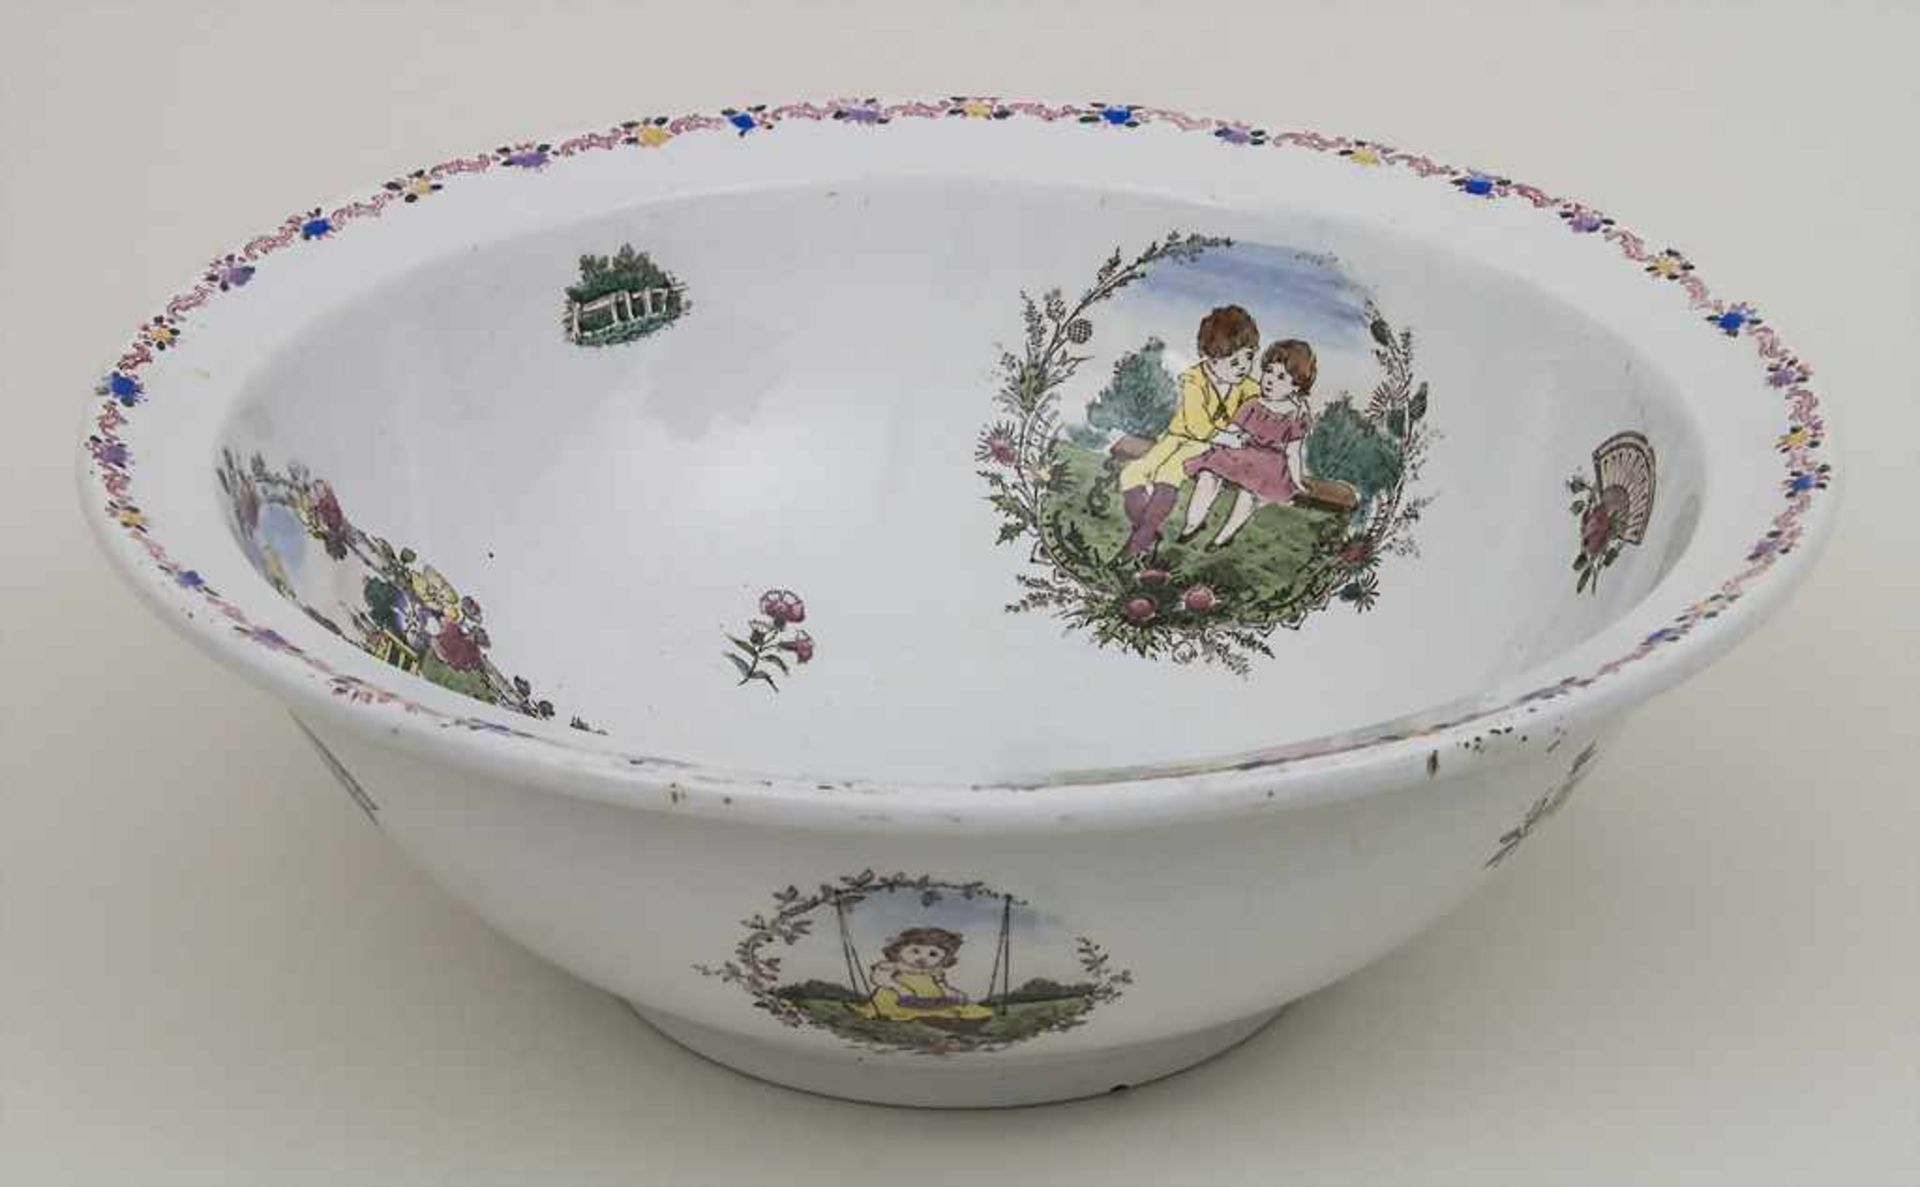 Waschschüssel mit den Lebenszyklen eines Mädchens / A wash bowl depicting the periods of life of a